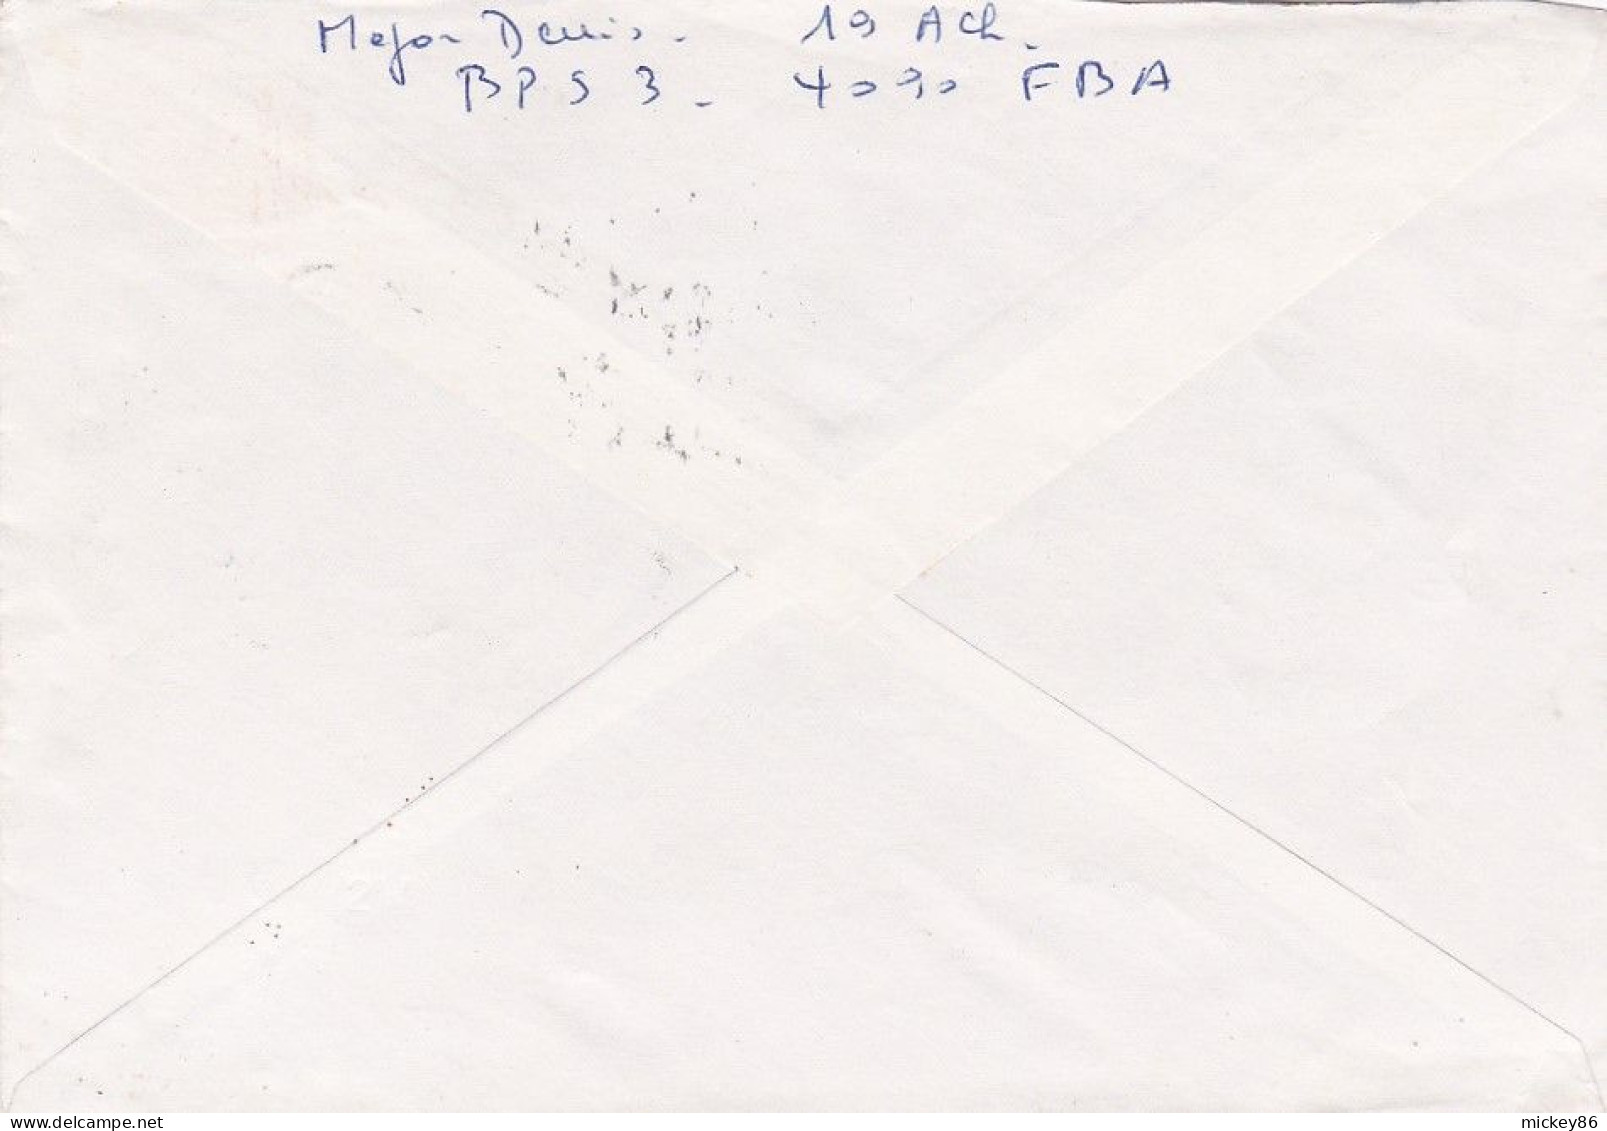 Belgique --1978--Lettre De POST 3  4090  Pour POITIERS (France)..timbre Seul Sur Lettre + Cachet  11-9-78 - Brieven En Documenten